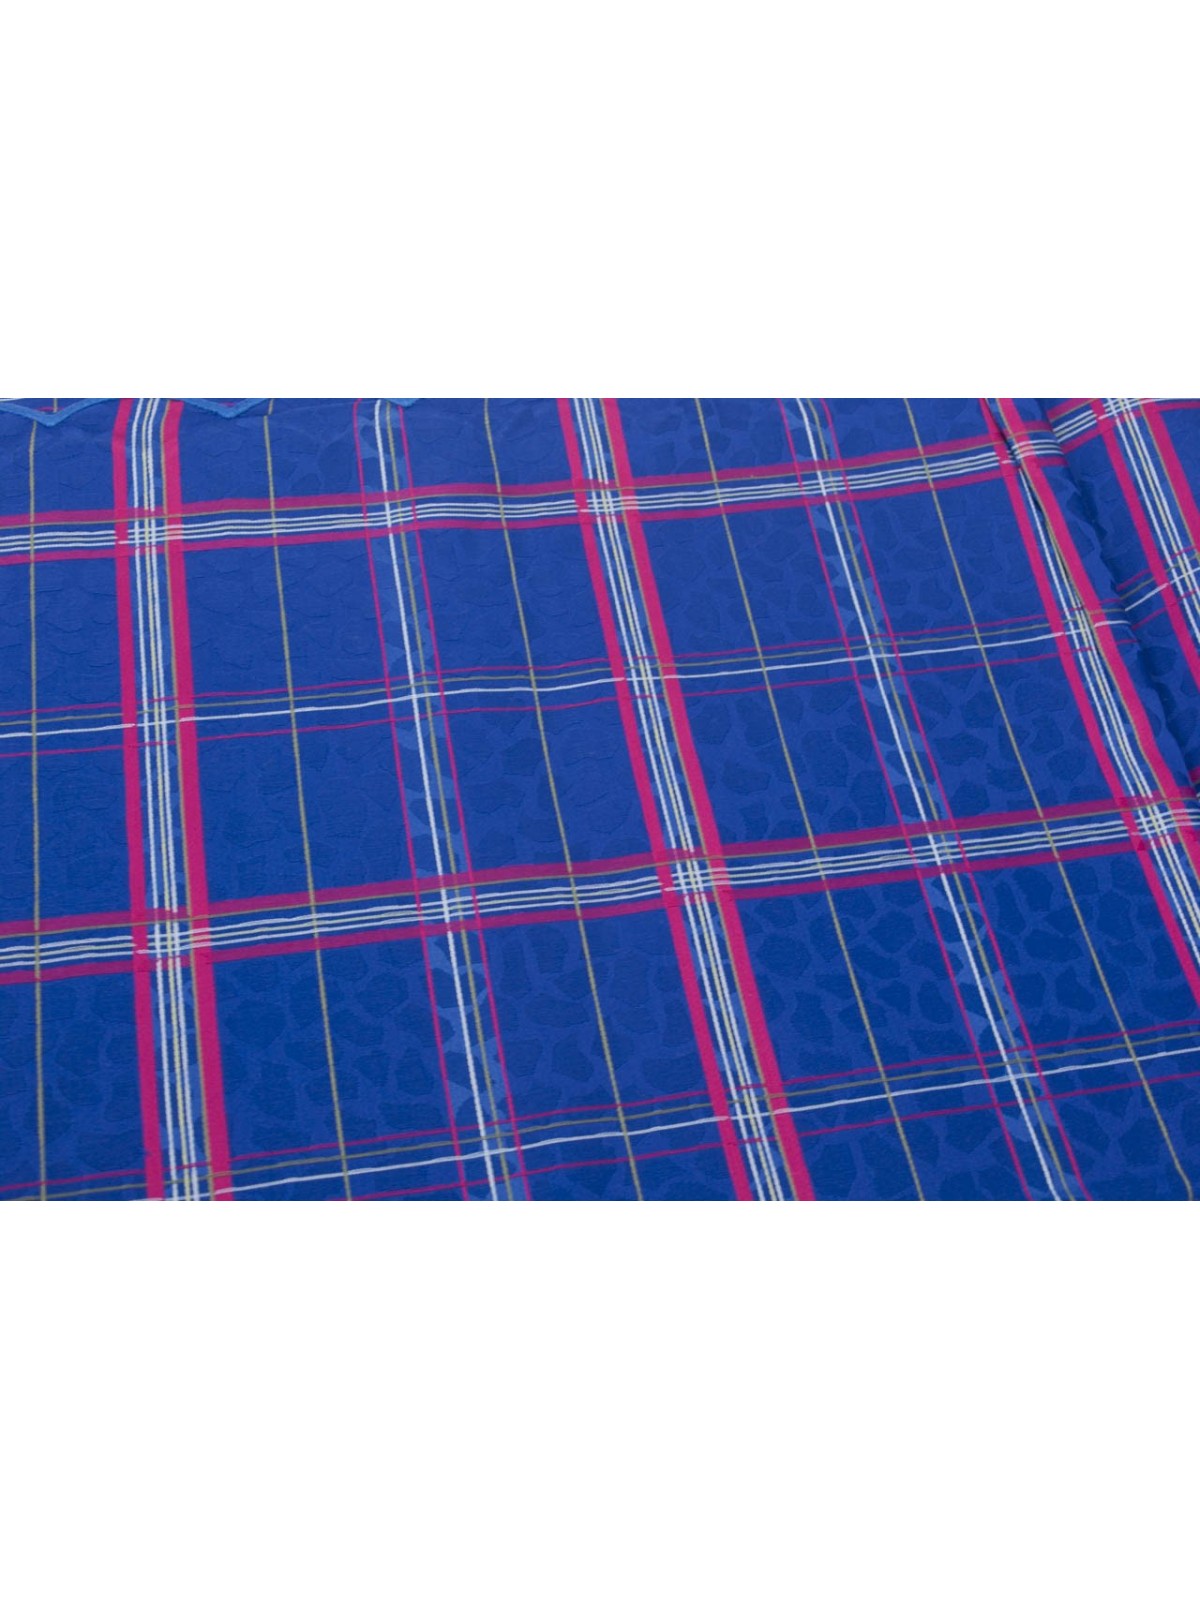 Doble colcha de Algodón Satén Azul real Fucsia Cuadros Paneles 270x270 Rebrodé